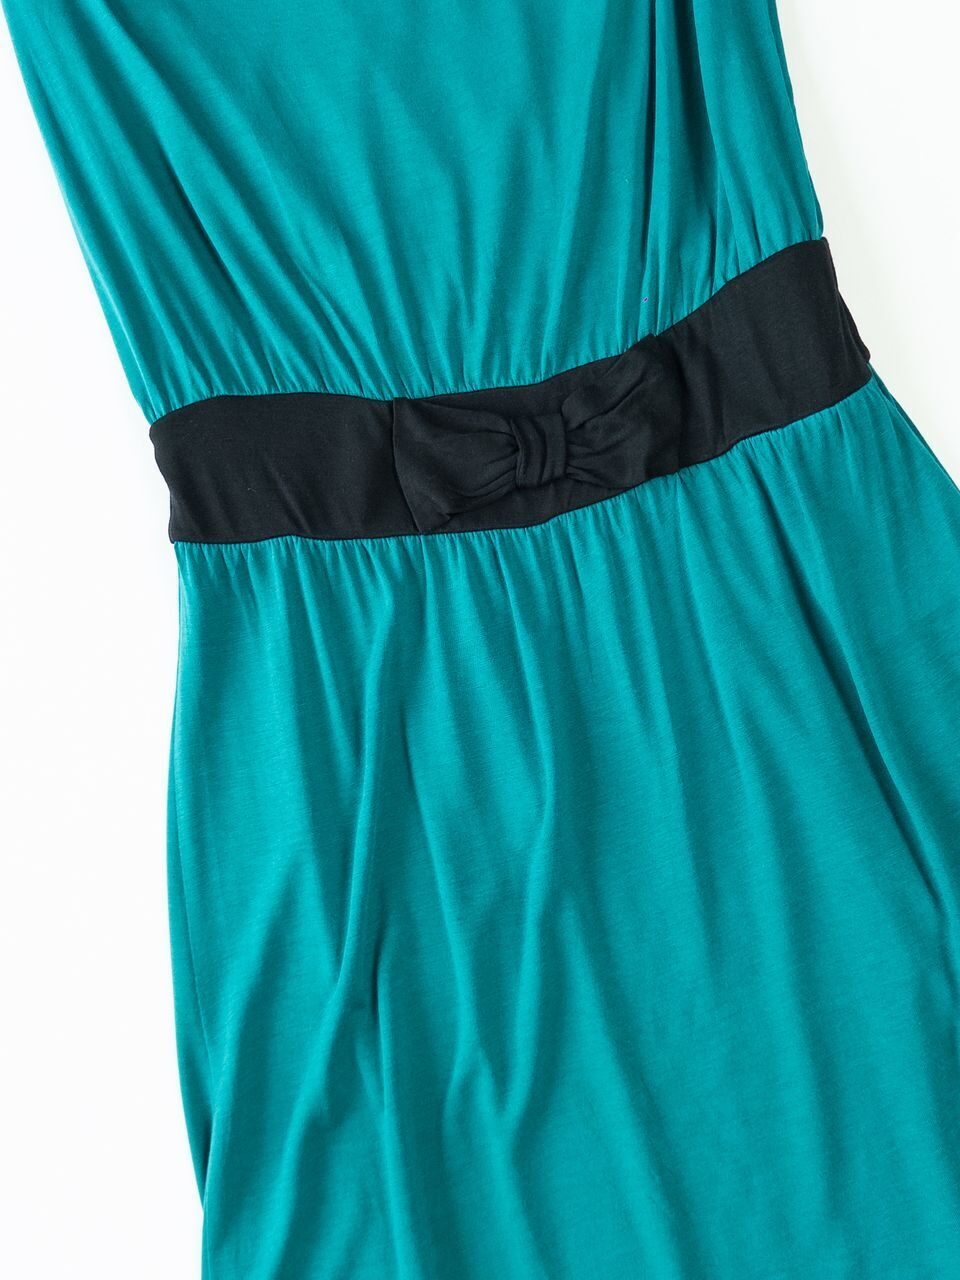 Платье цвет темно-зеленый размер EUR S (rus 42) zalando